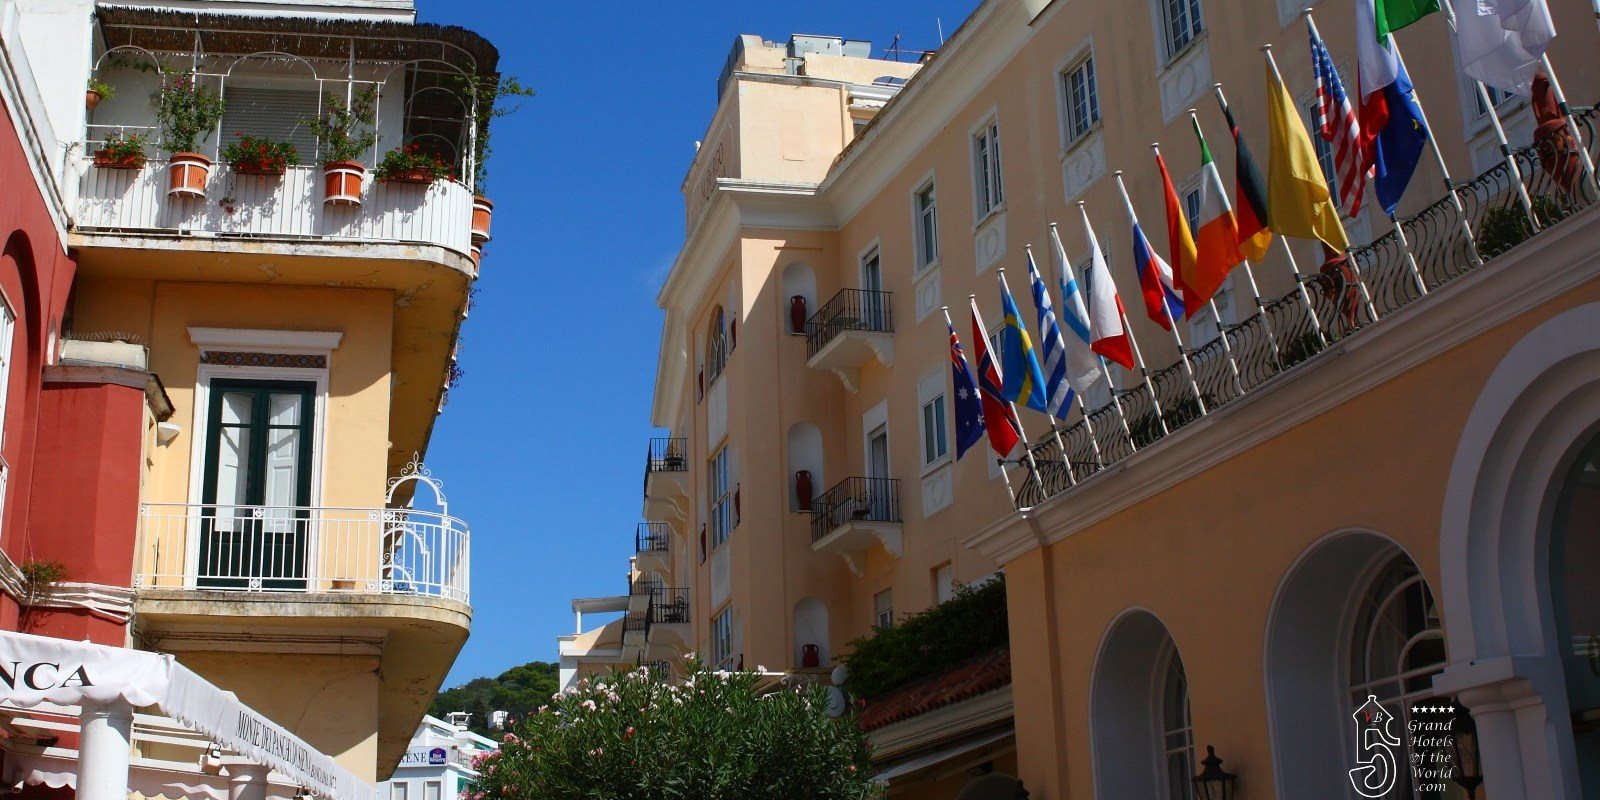 Grand Hotel Quisisana in Capri